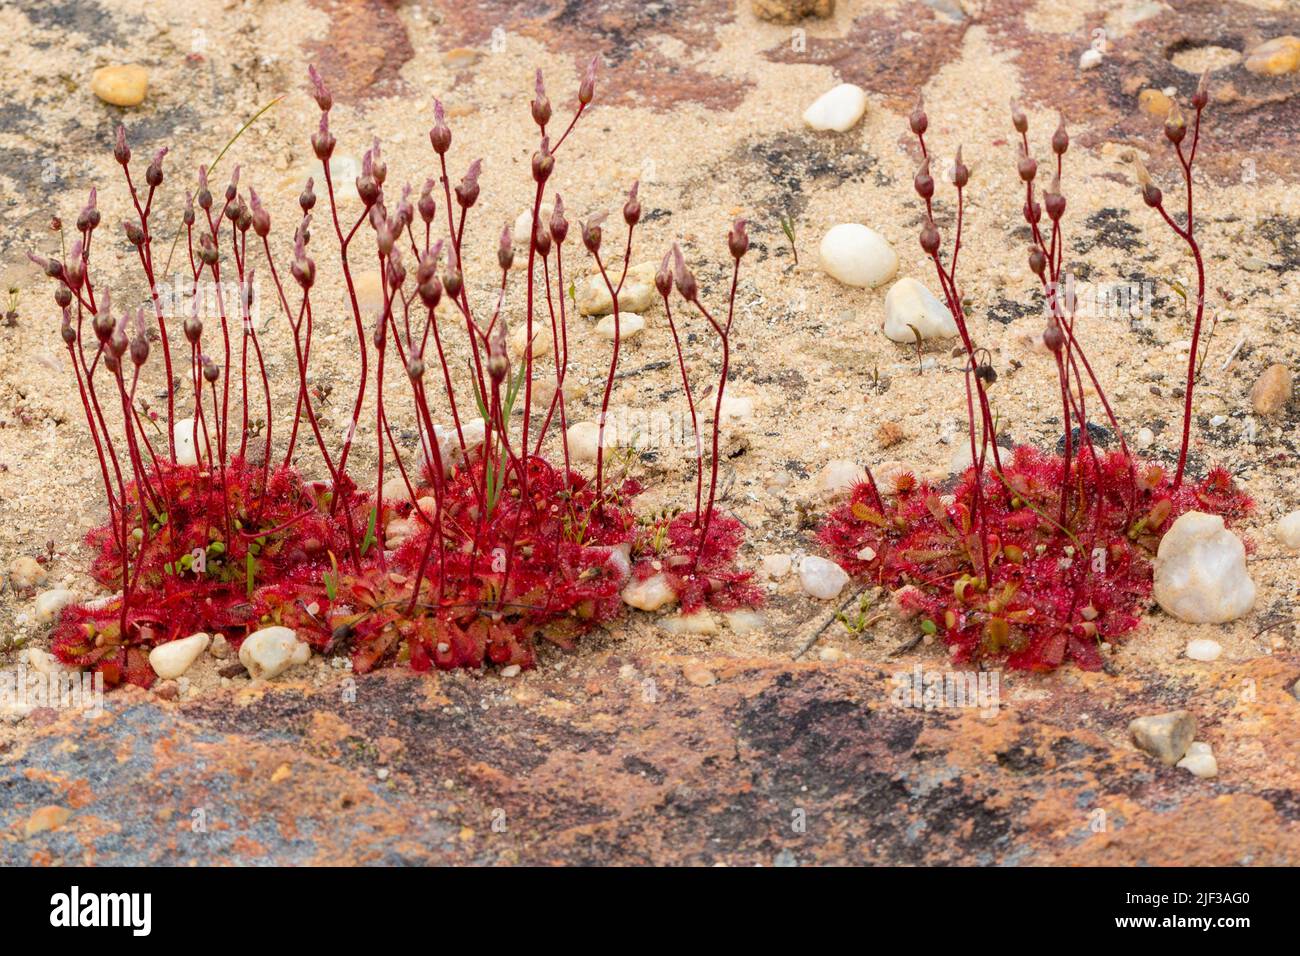 Plantas carnívoras: Floración Drosera sp. Tomada cerca de Nieuwoudtville en el Cabo Norte de Sudáfrica Foto de stock